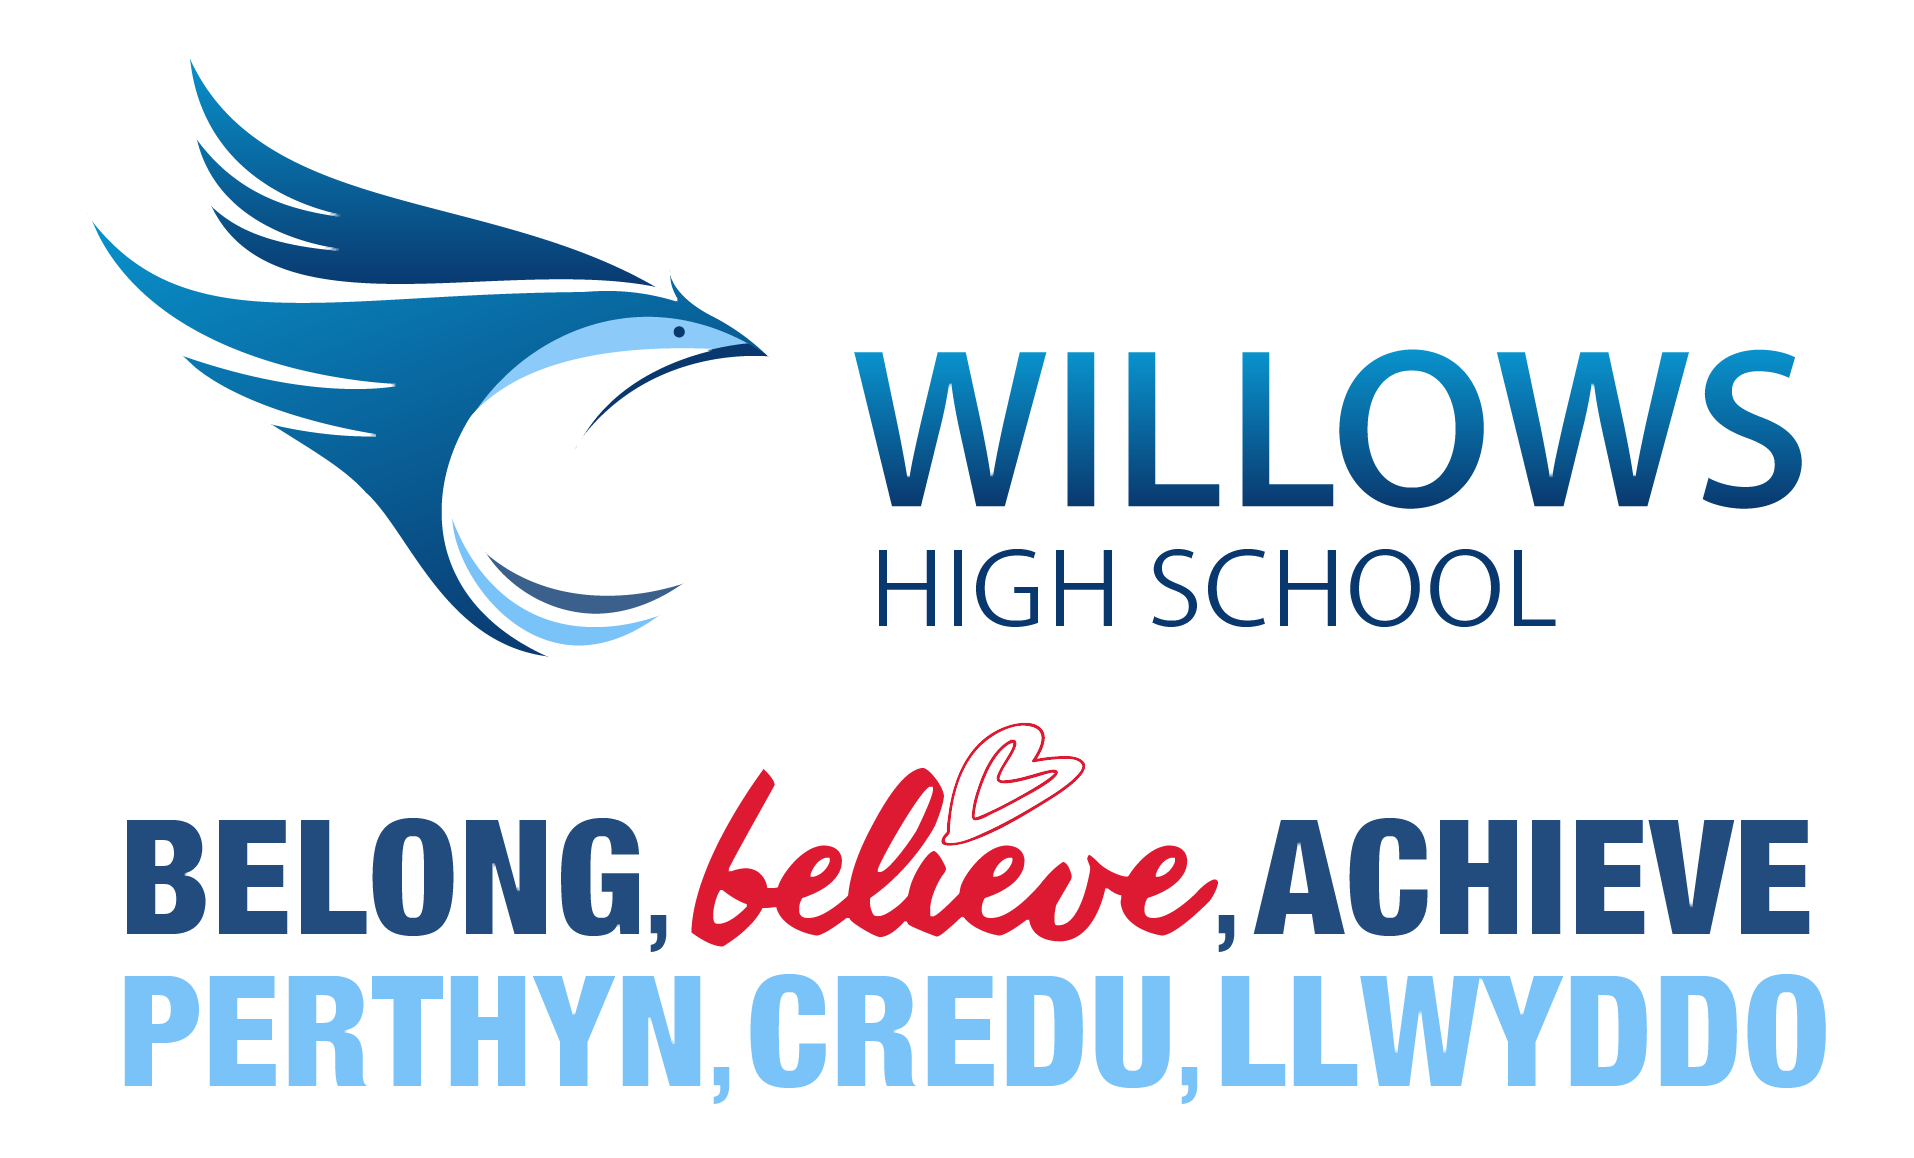 Willows high school logo